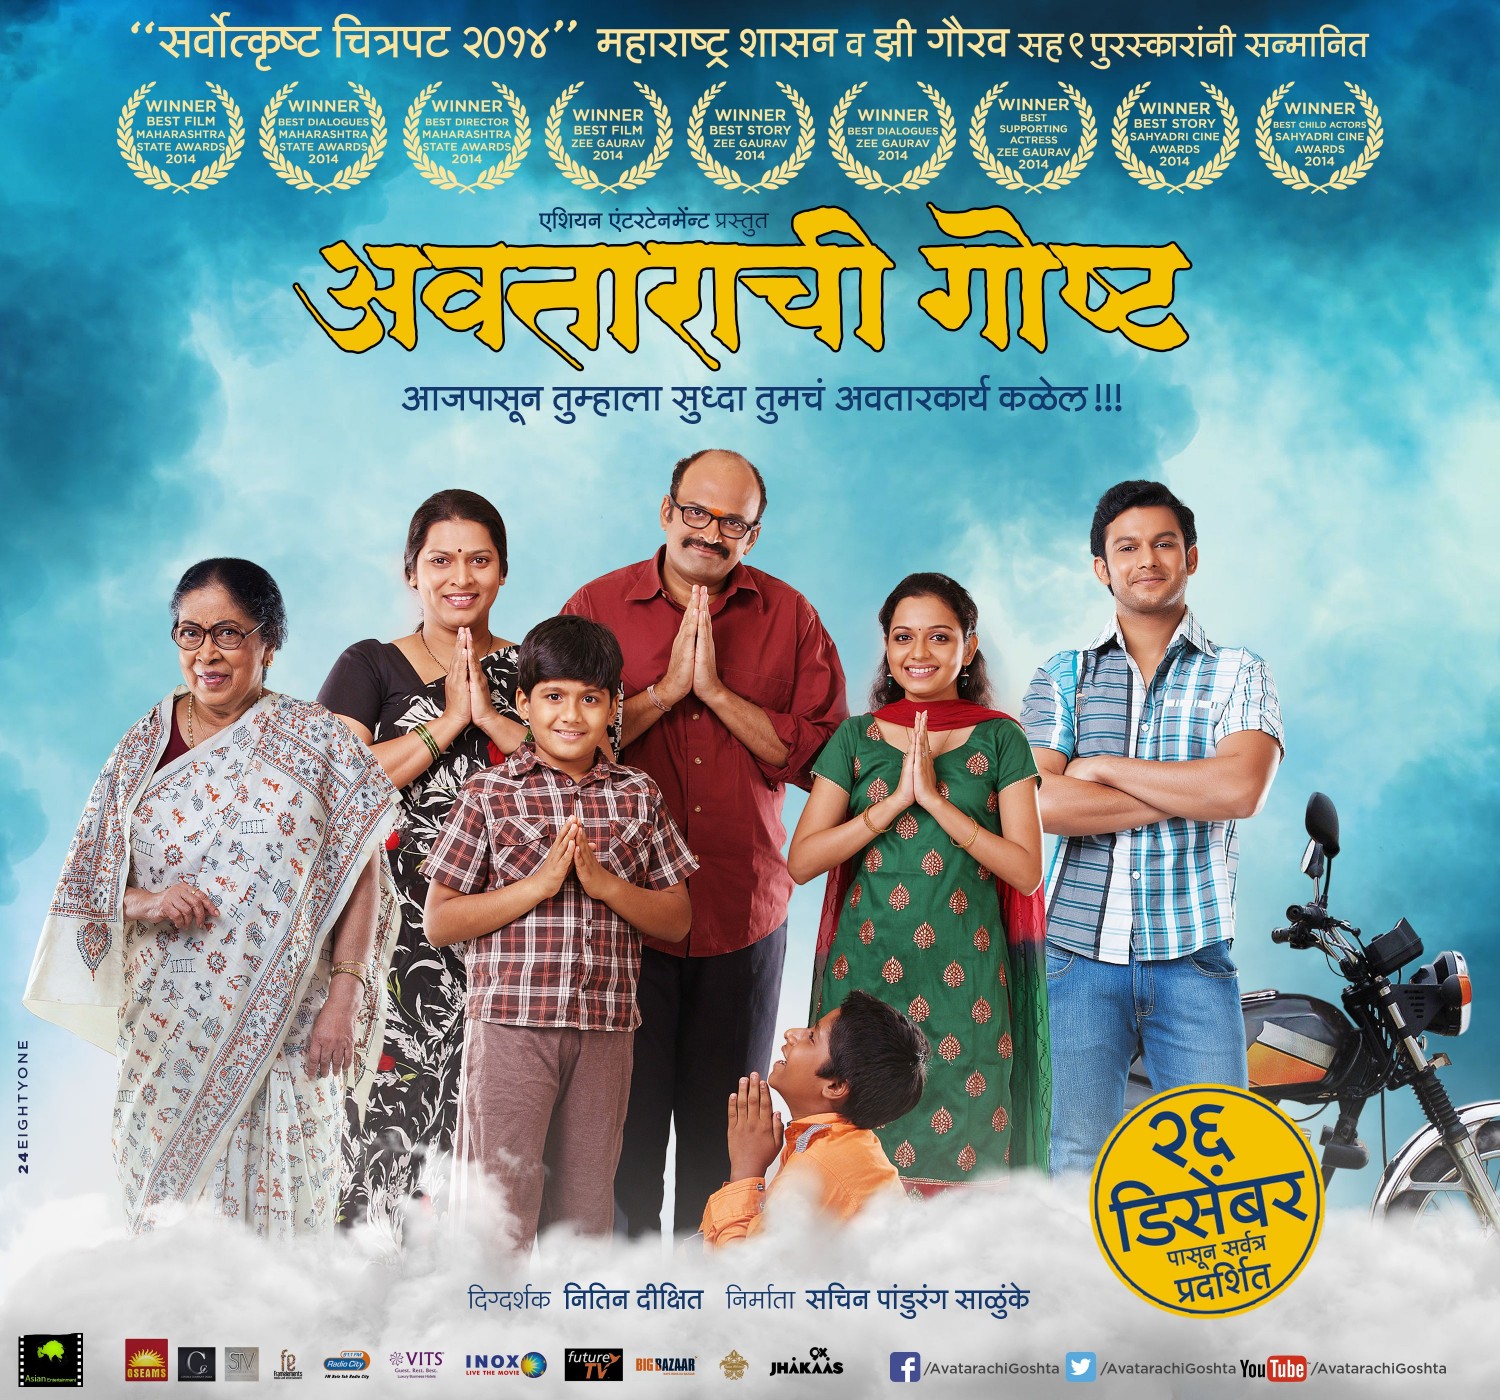 Extra Large Movie Poster Image for Avatarachi Goshta (#4 of 4)